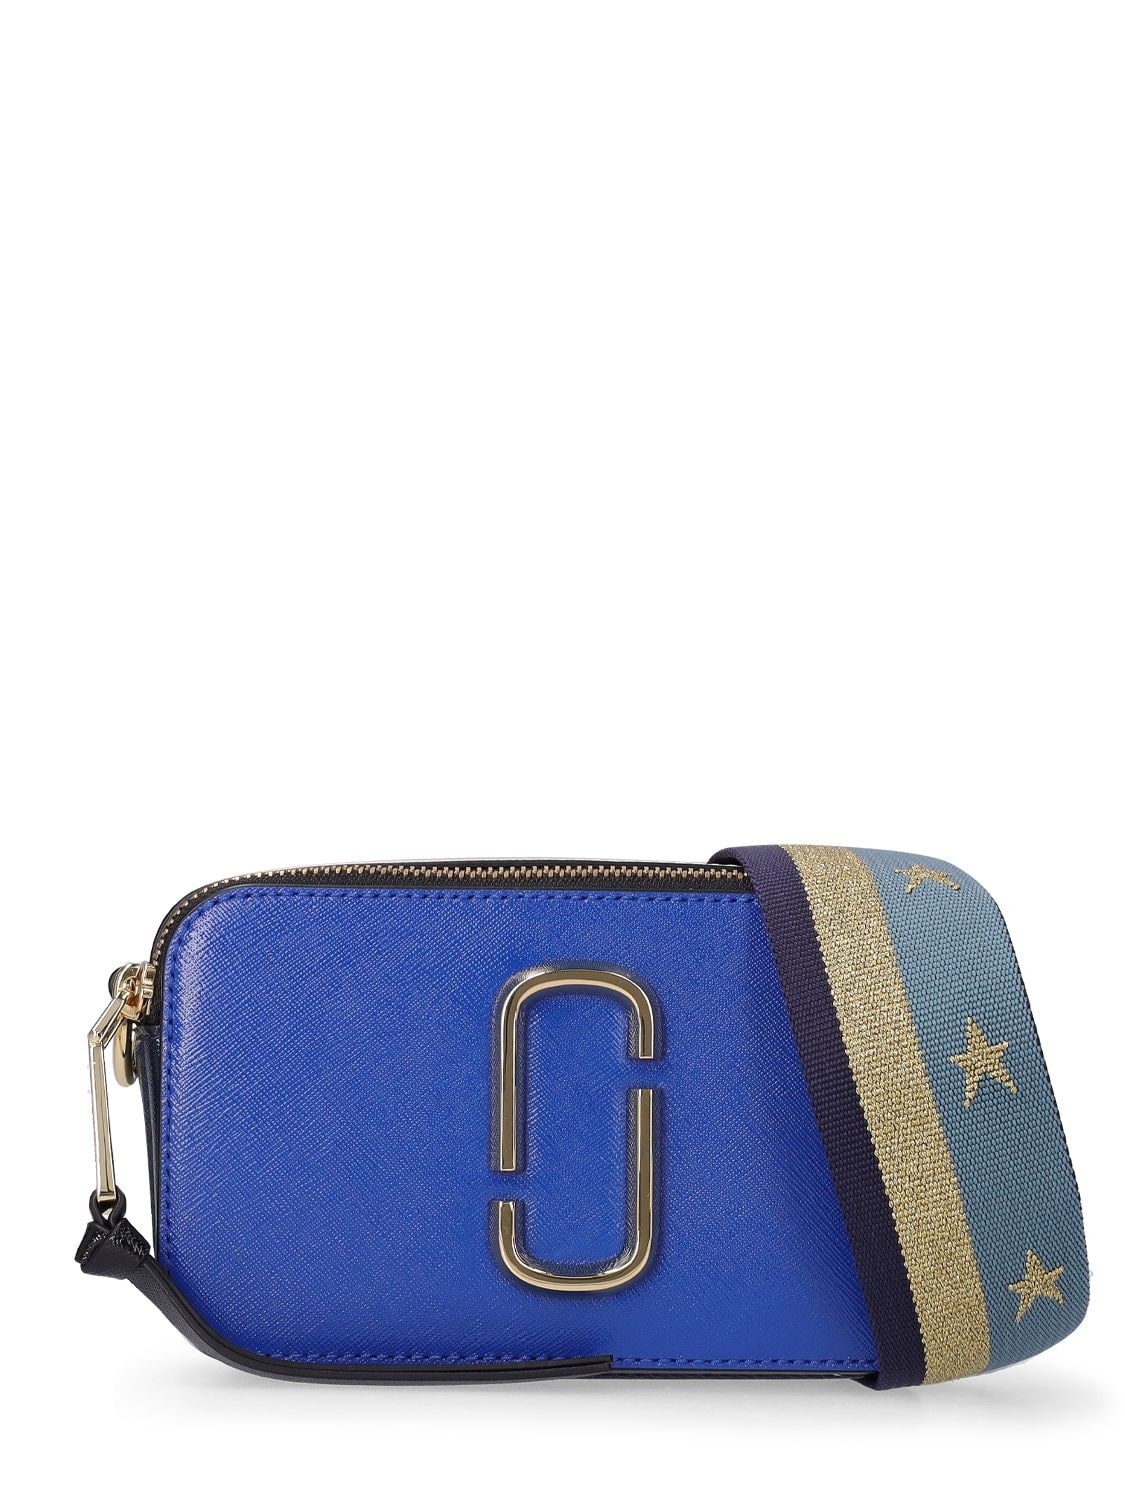 Marc Jacobs Snapshot Leather Shoulder Bag In Blue